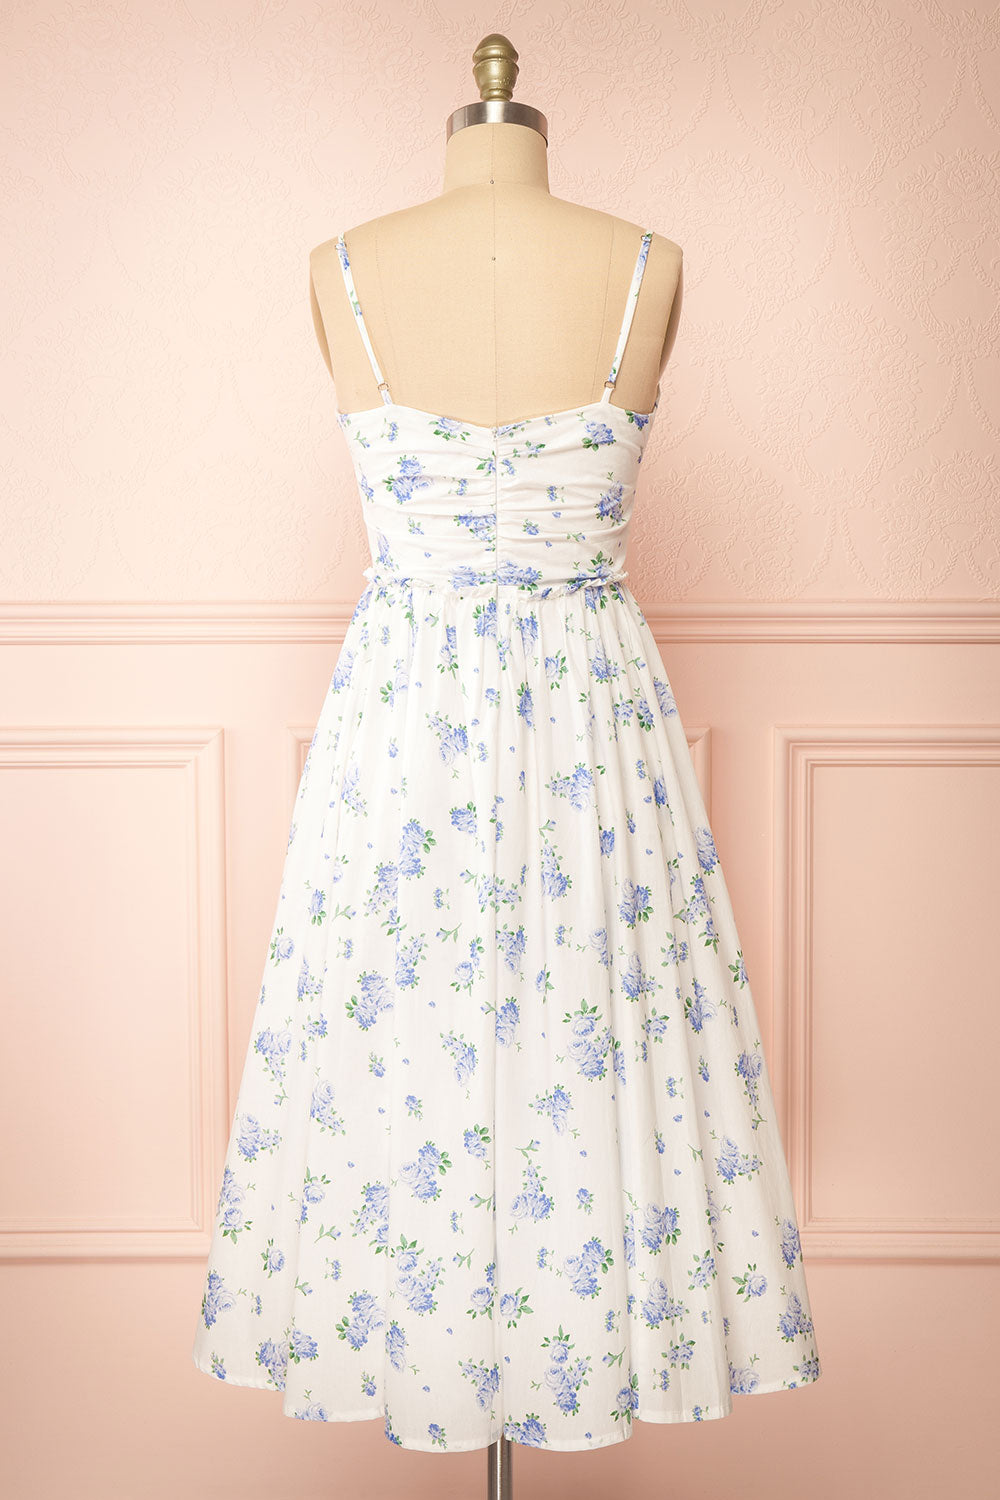 Sayonelle Short White A-line Dress w/ Blue Floral Motif | Boutique 1861  back view